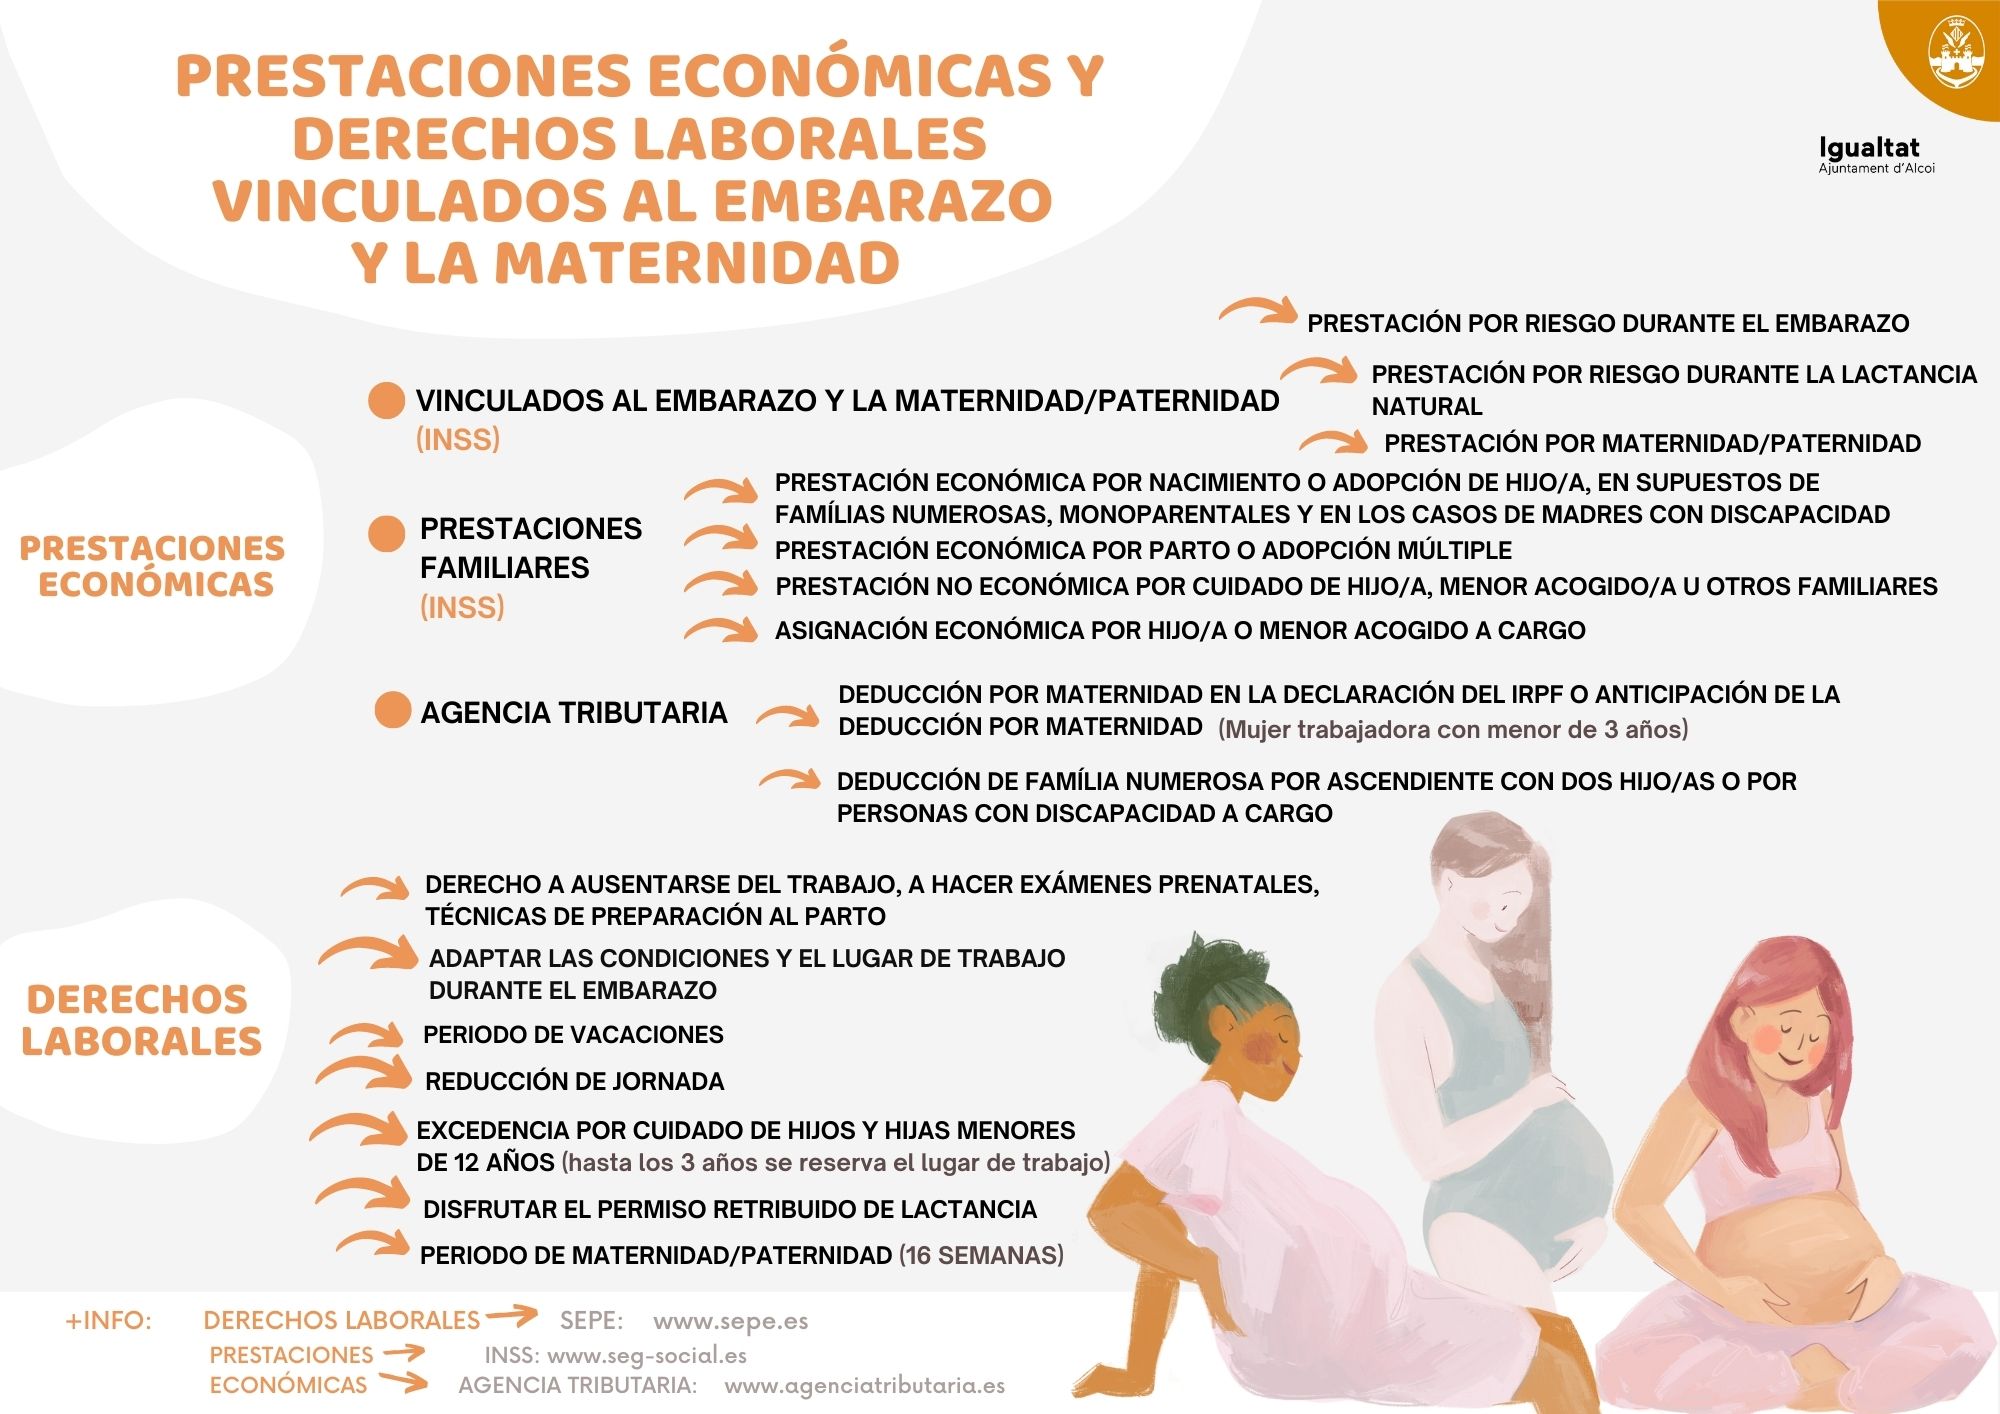 Prestaciones económicas y derechos laborales vinculados al embarazo y la maternidad (descripción detallada a continuación)